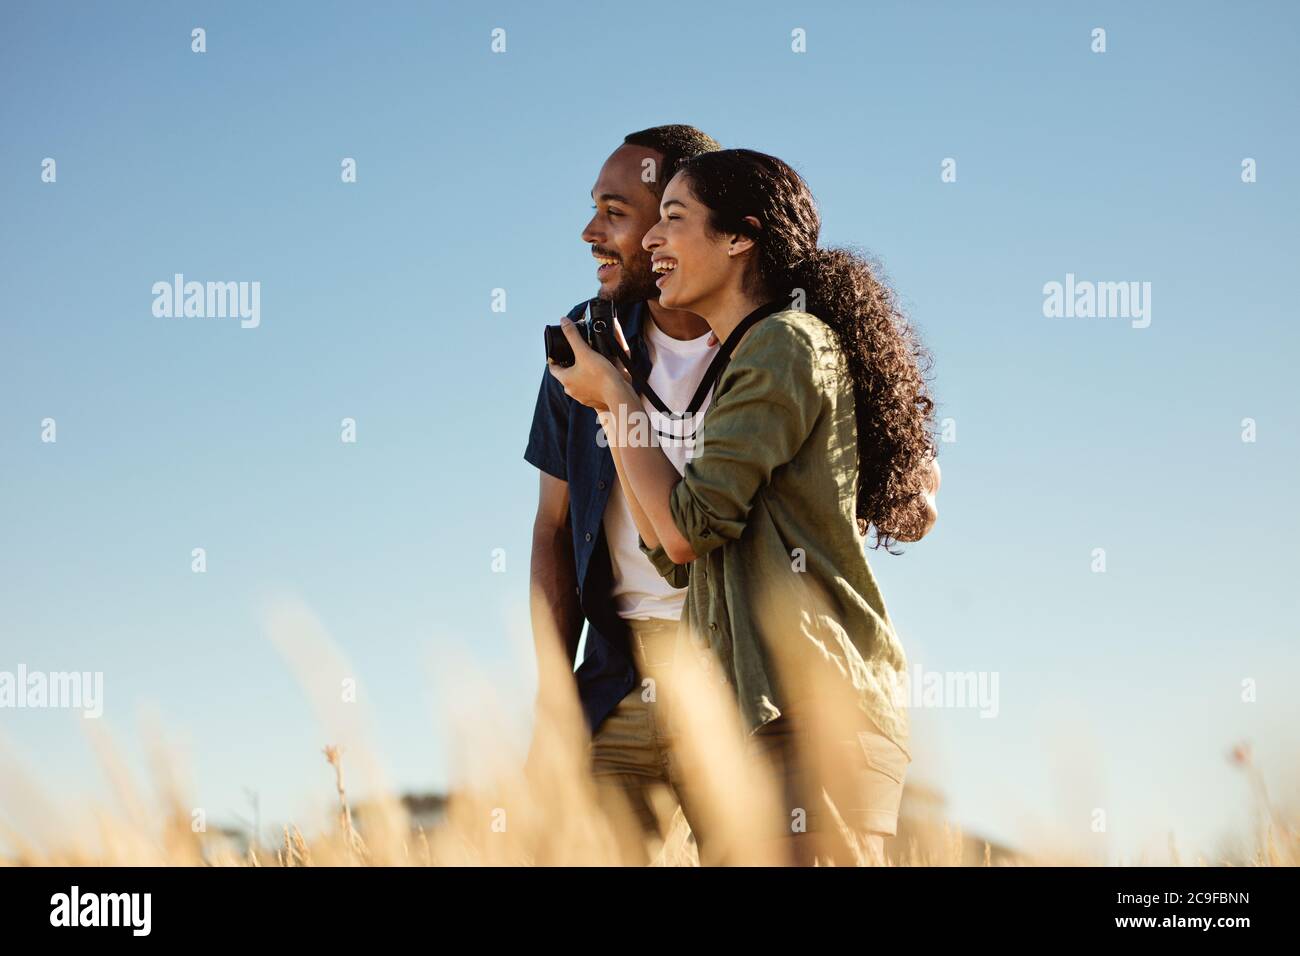 Ritratto di una coppia turistica sorridente che si erge insieme nel campo guardando lontano. Felice coppia godendo i momenti vicini in una vacanza. Foto Stock